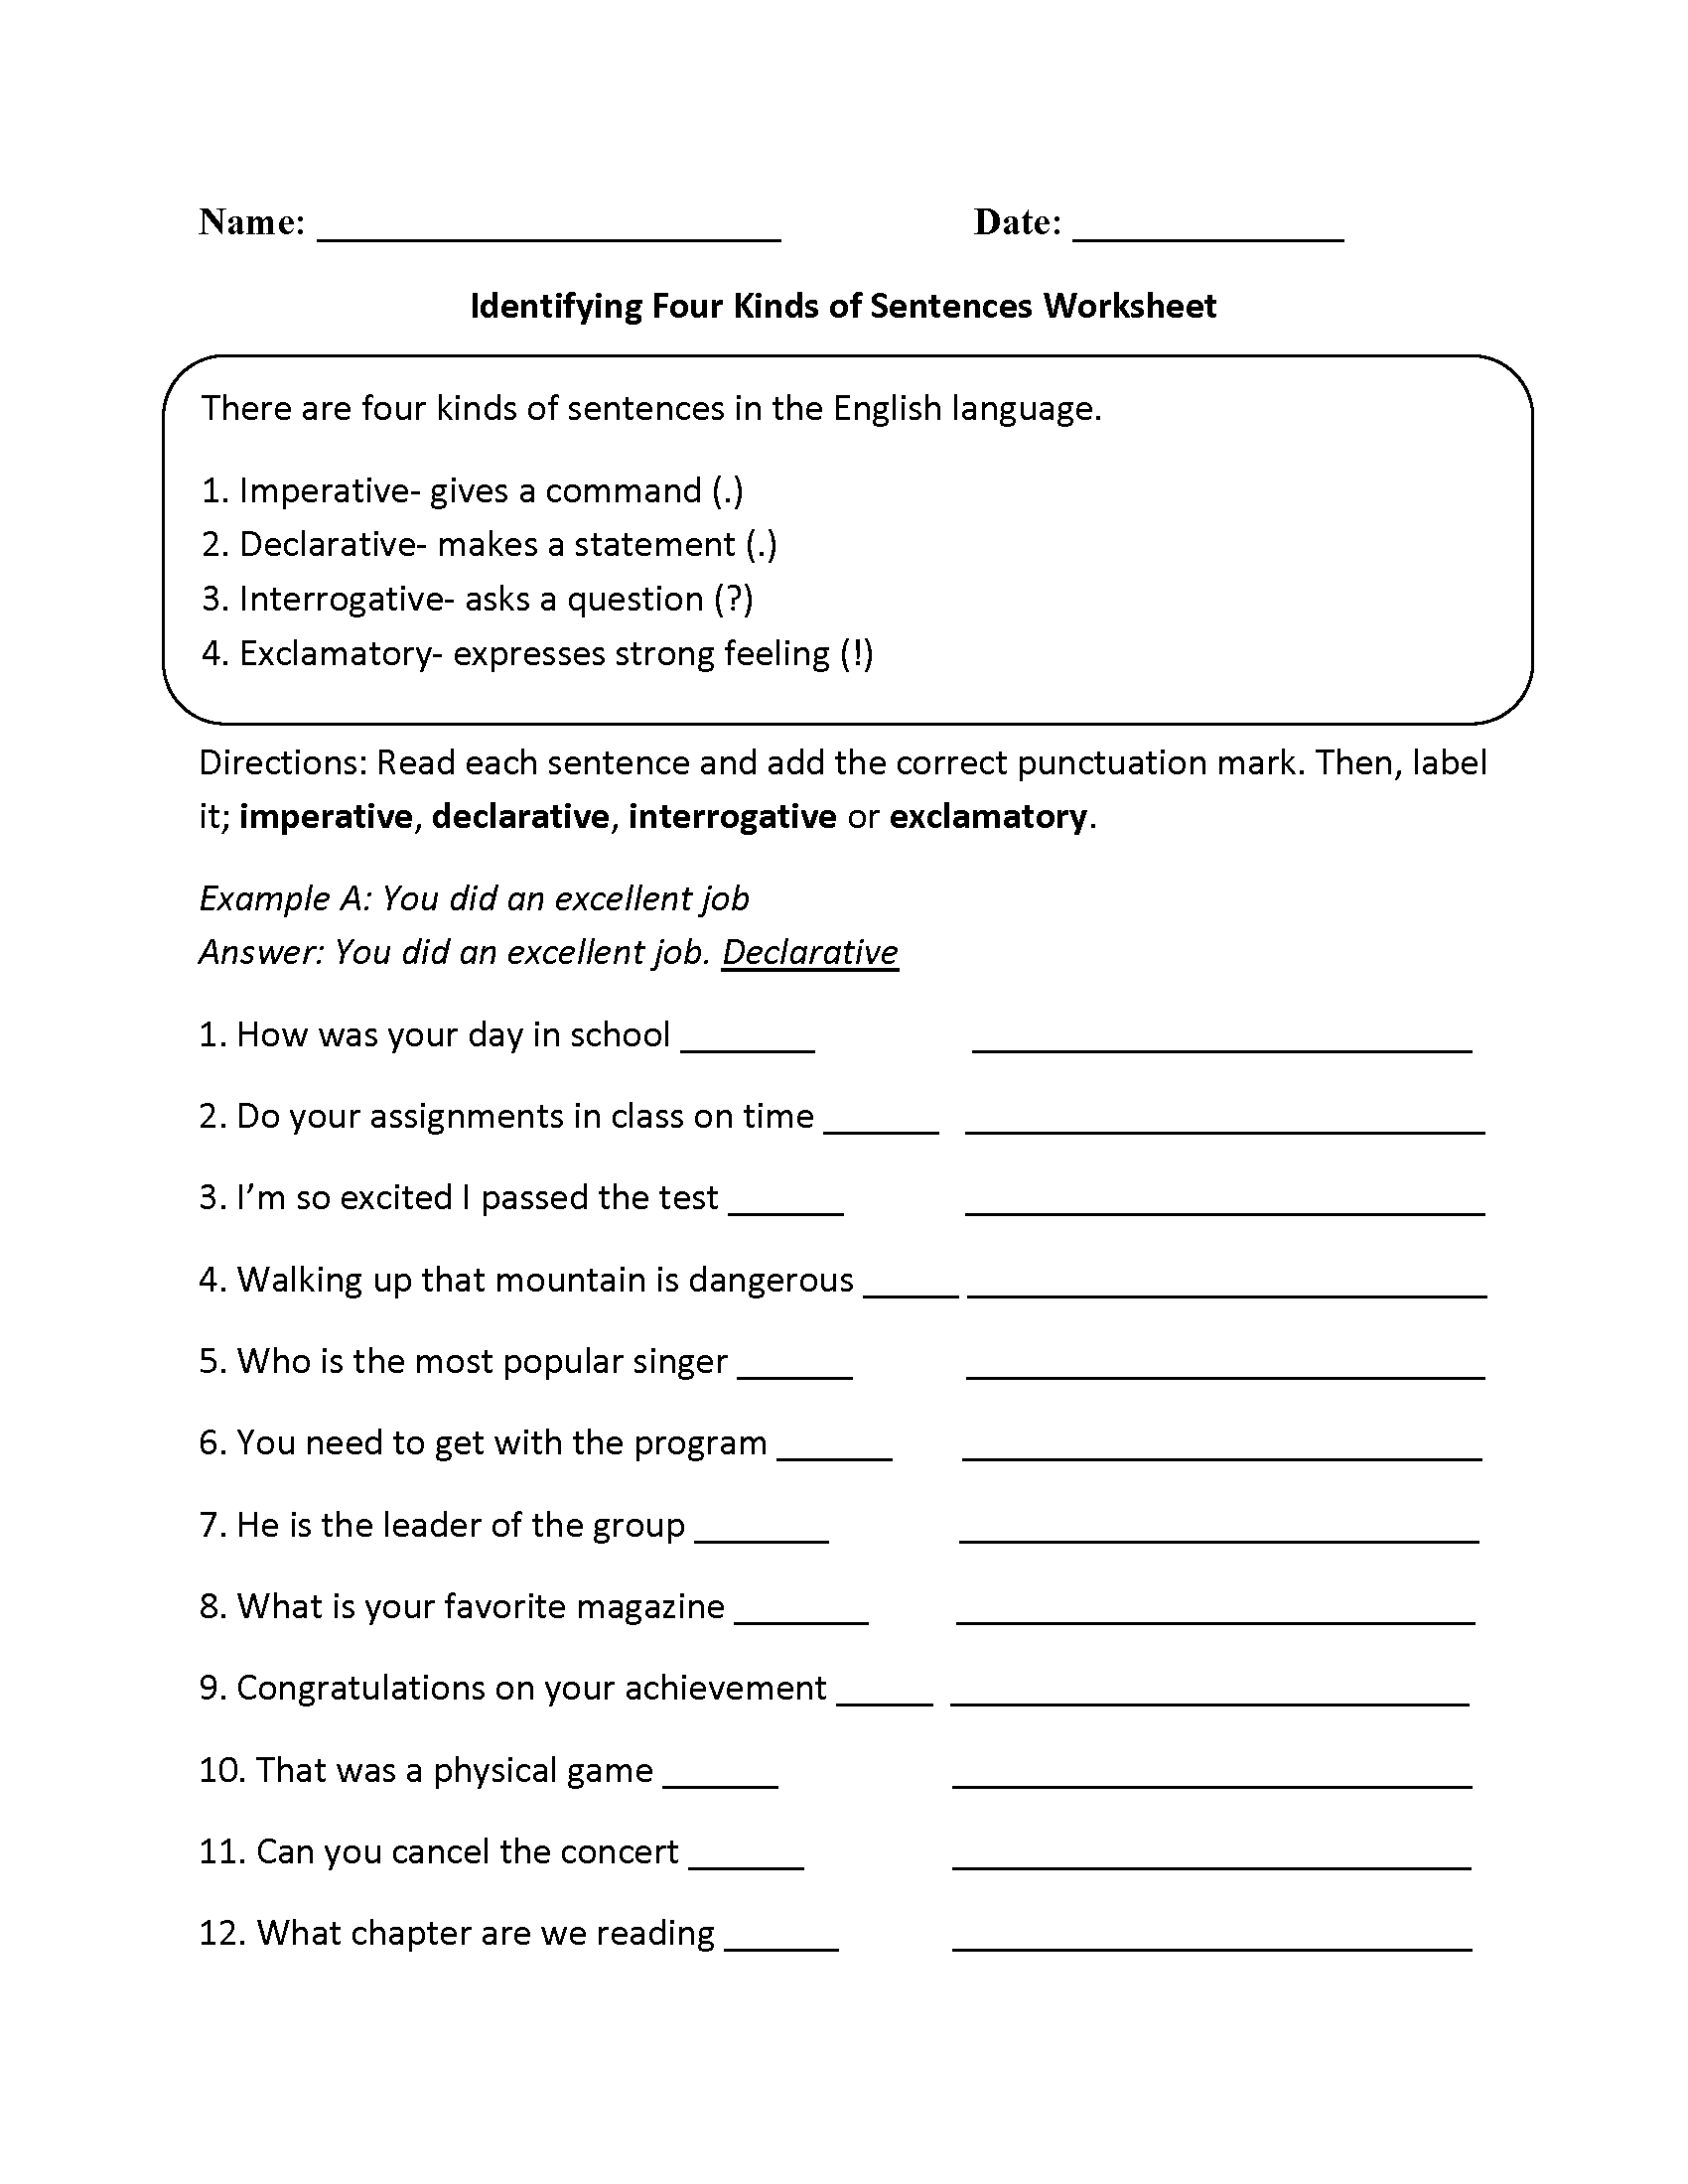 Grade 4 Worksheets On Kinds Of Sentences